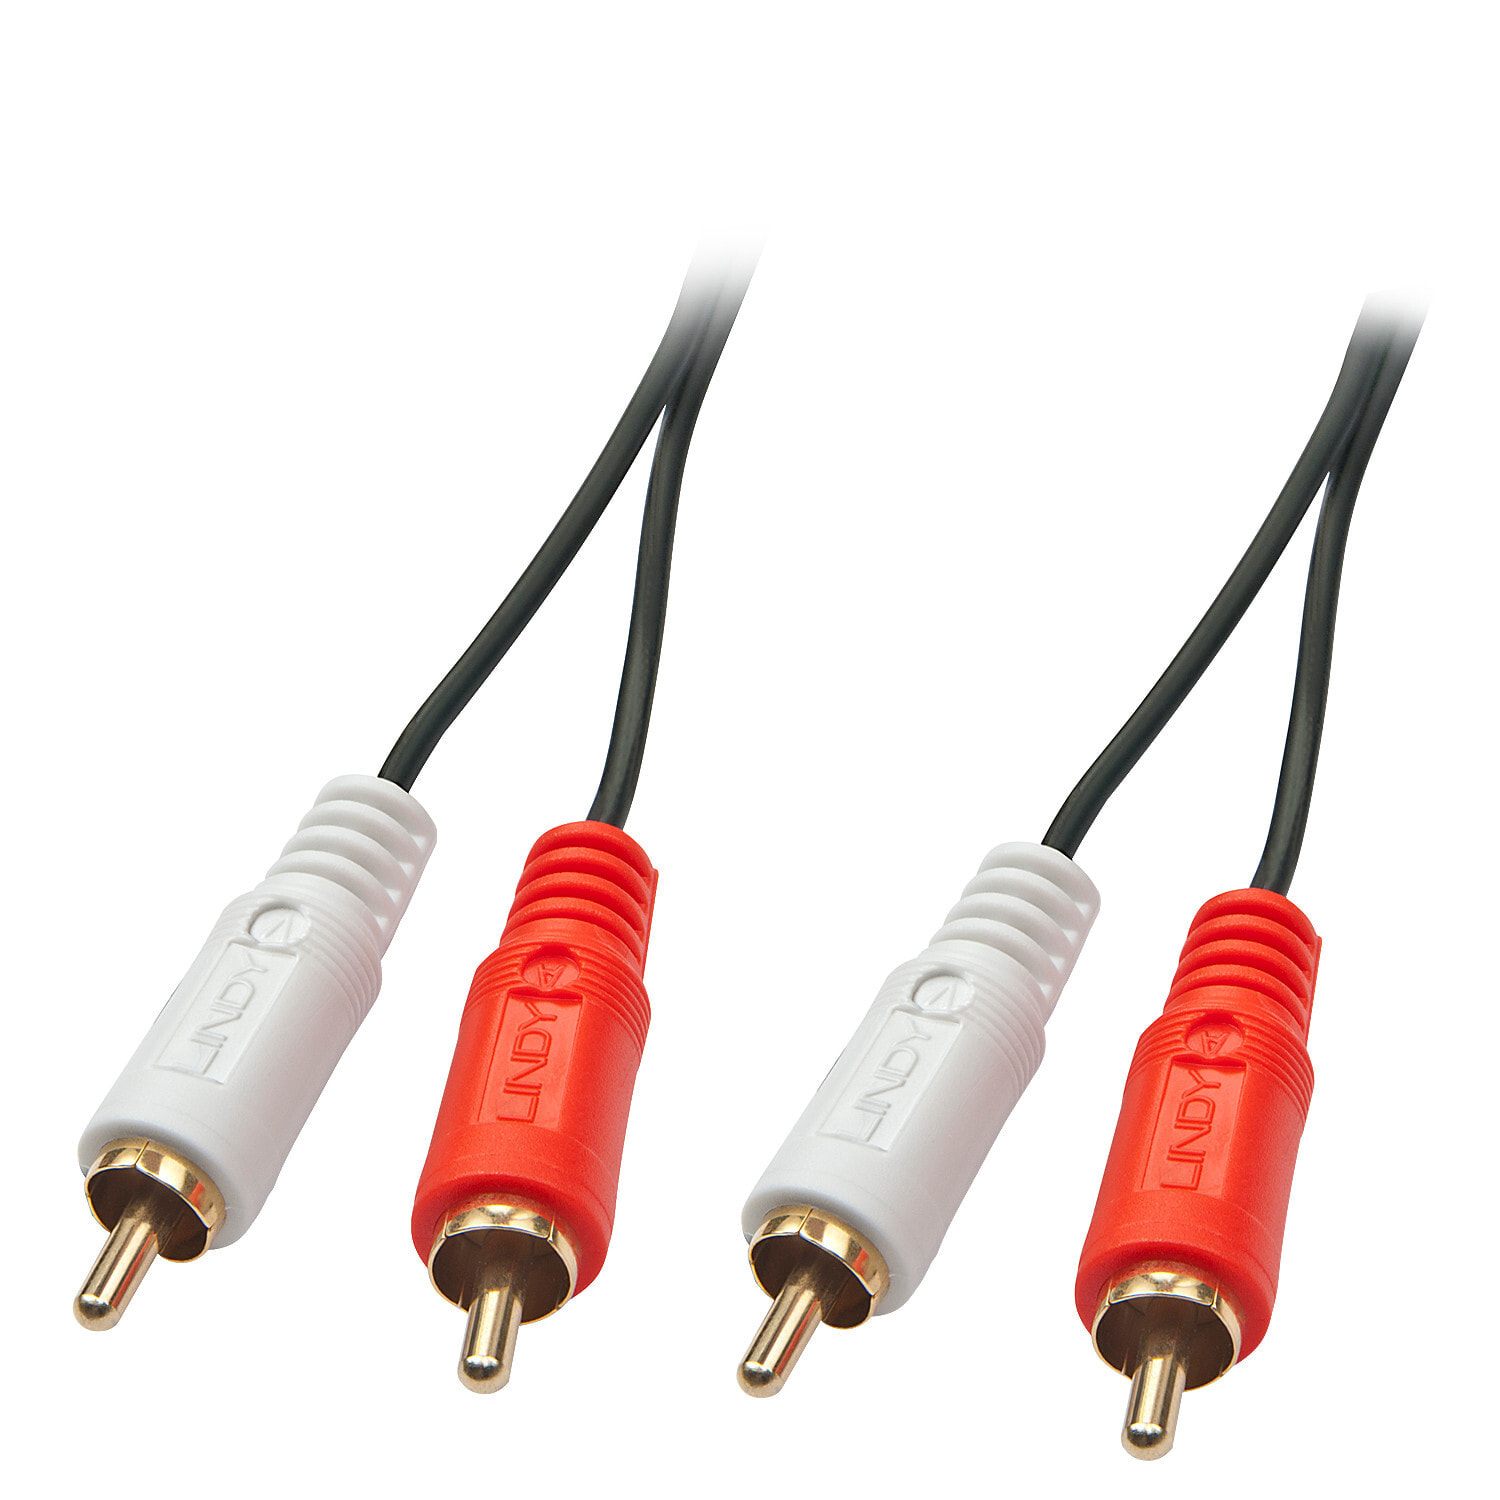 Lindy 35666 аудио кабель 20 m 2 x RCA Черный, Красный, Белый